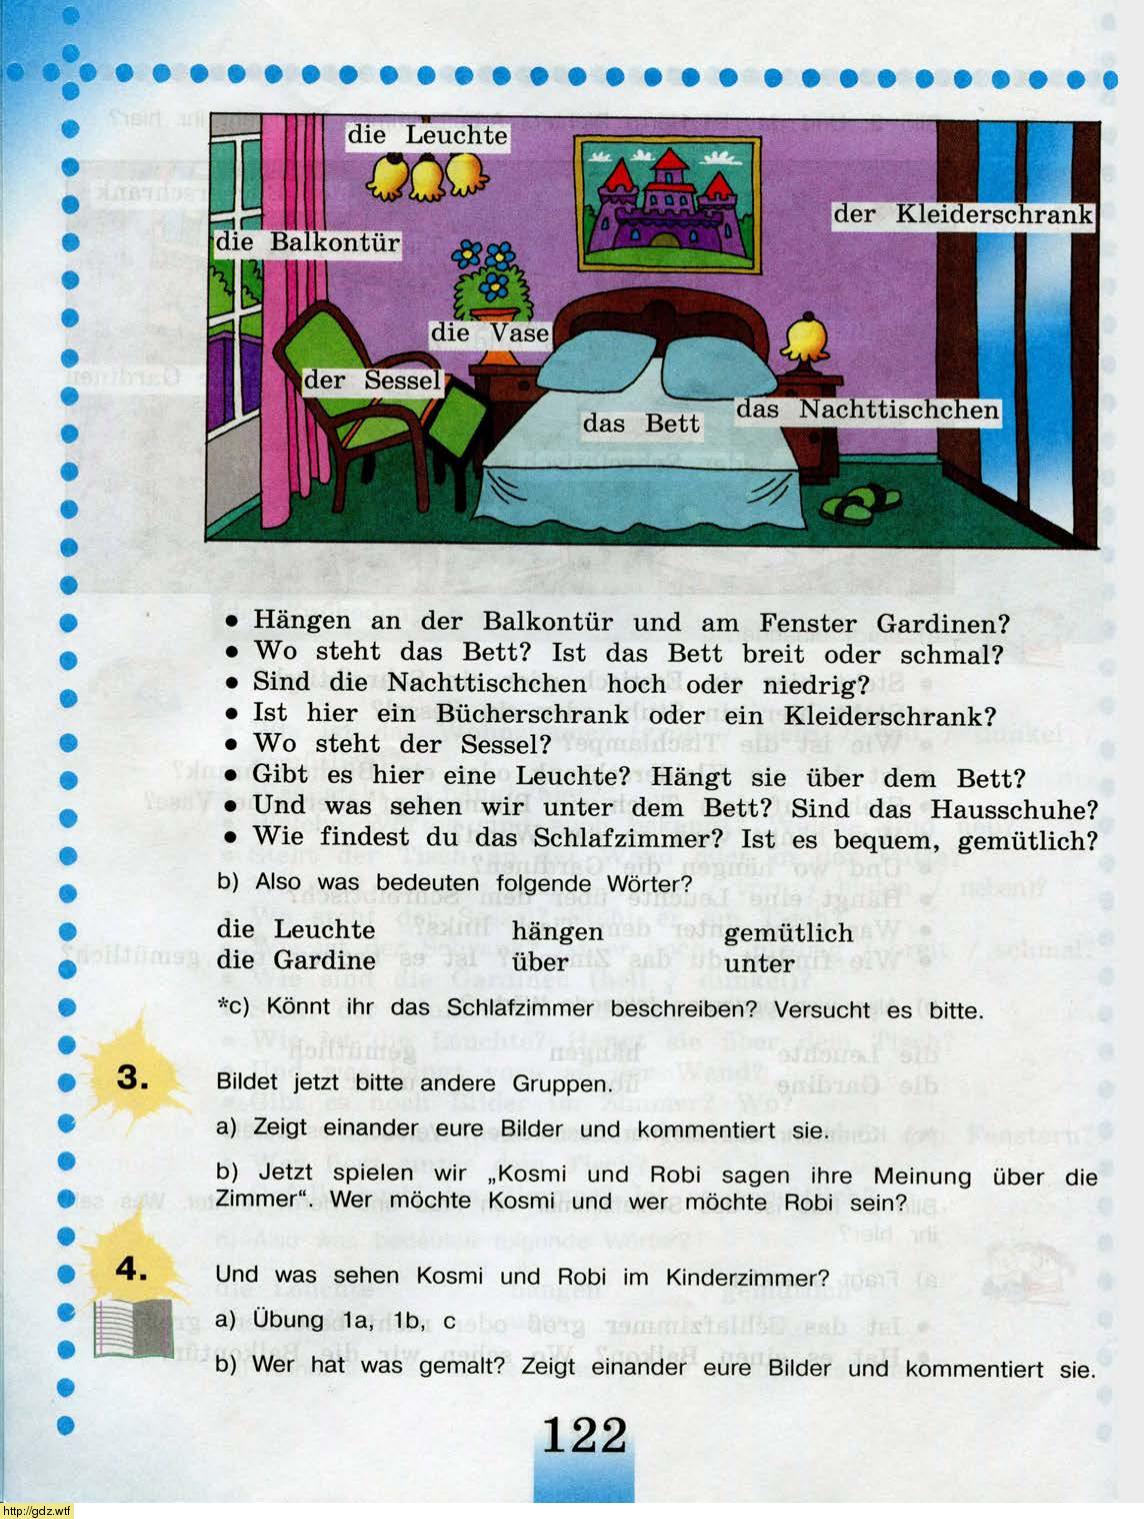 Немецкий язык 5 класс учебник ответы